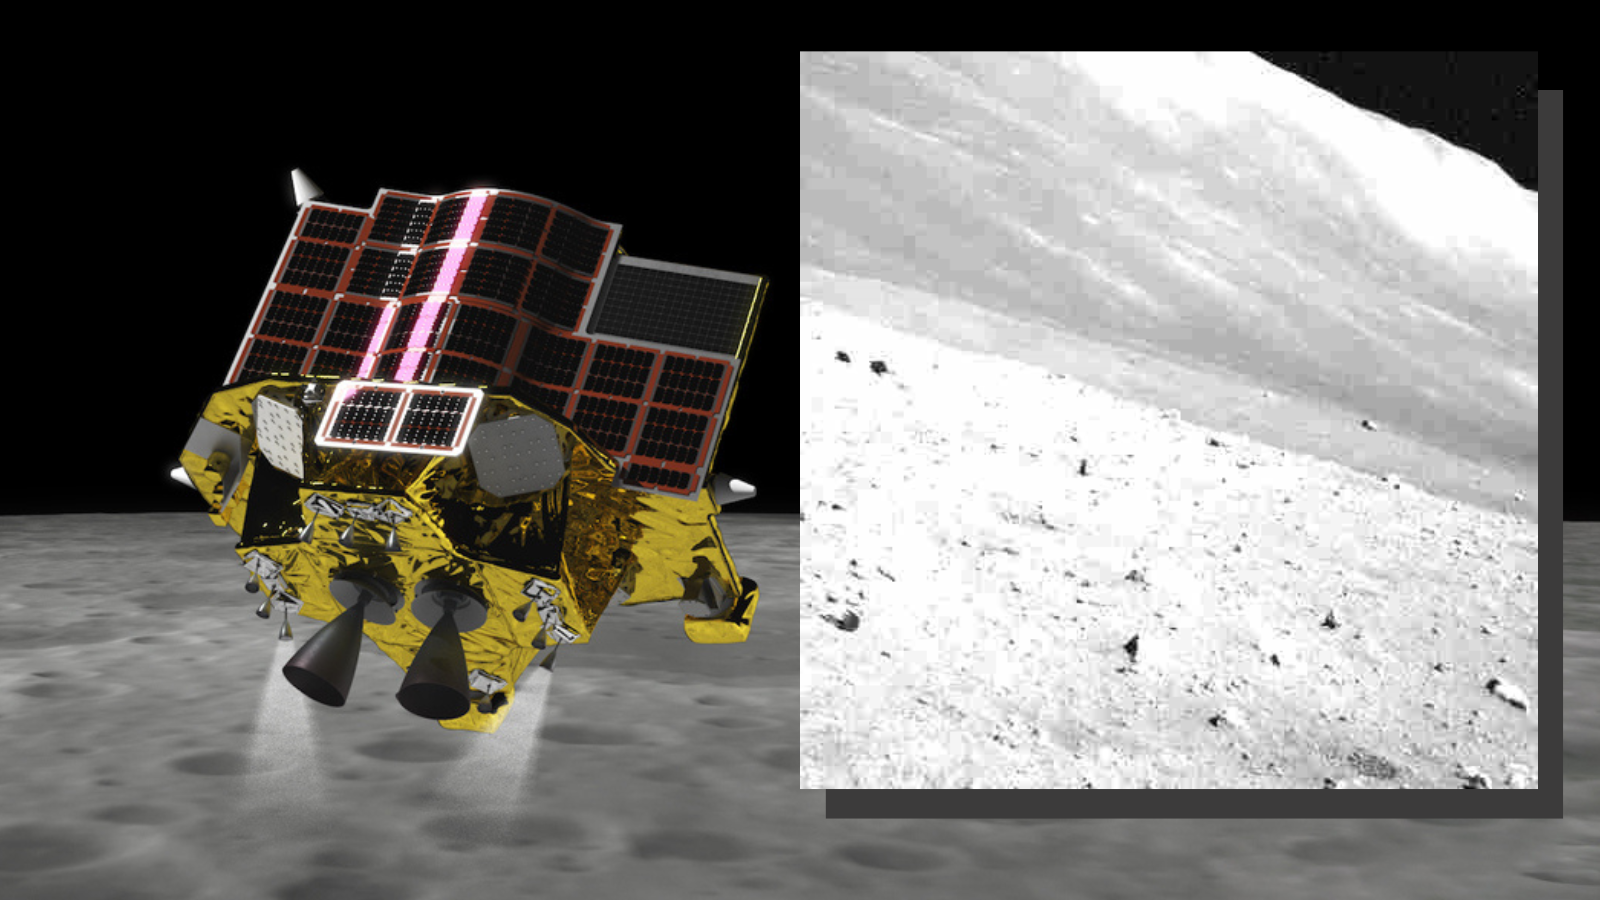 Japan’s SLIM moon lander defies death to survive 3rd frigid lunar night (image) Space